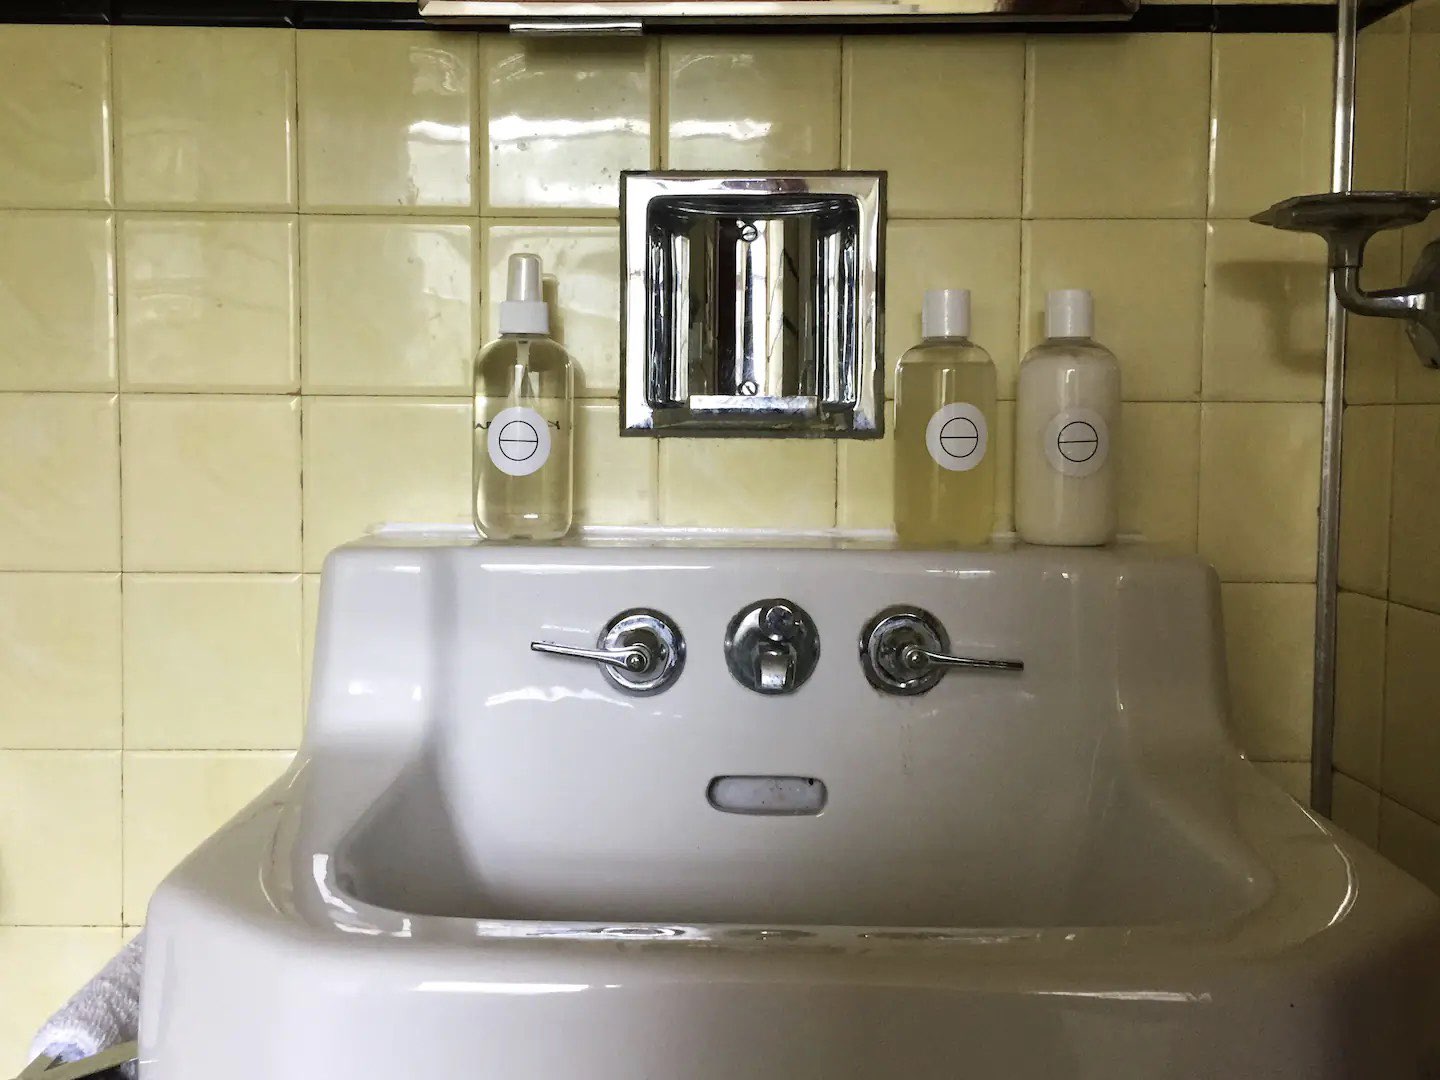 visite deco appartement mid century modern détail lavabo blanc en faïence vintage carrelage jaune pastel carré chic et rétro